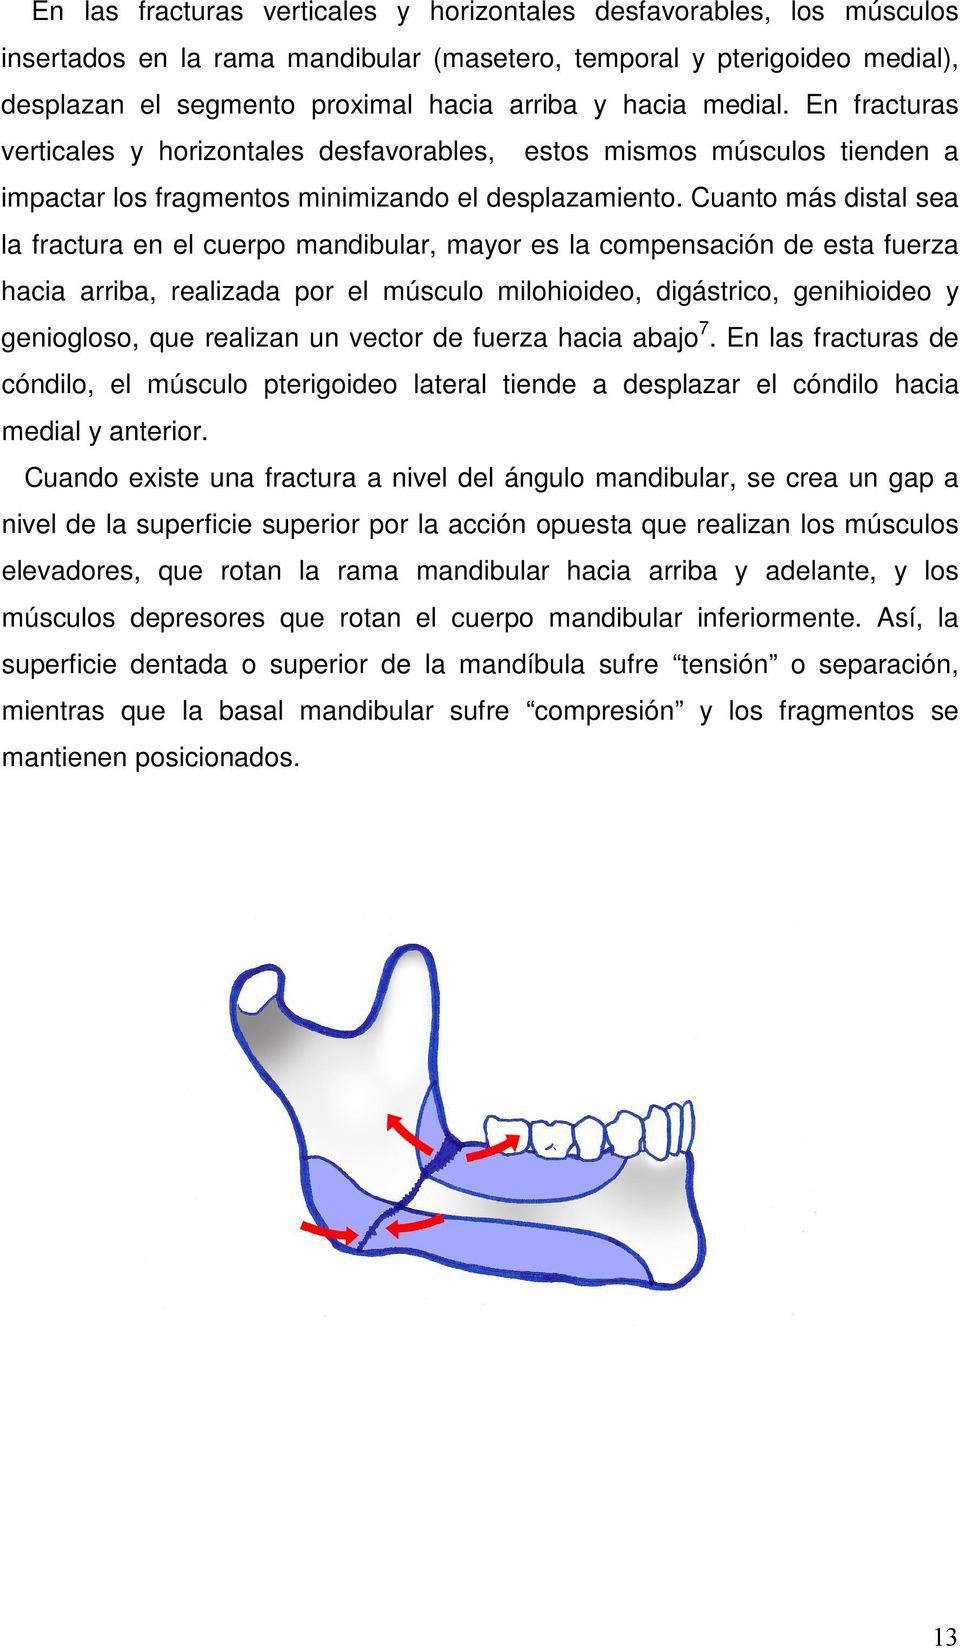 Cuanto más distal sea la fractura en el cuerpo mandibular, mayor es la compensación de esta fuerza hacia arriba, realizada por el músculo milohioideo, digástrico, genihioideo y geniogloso, que